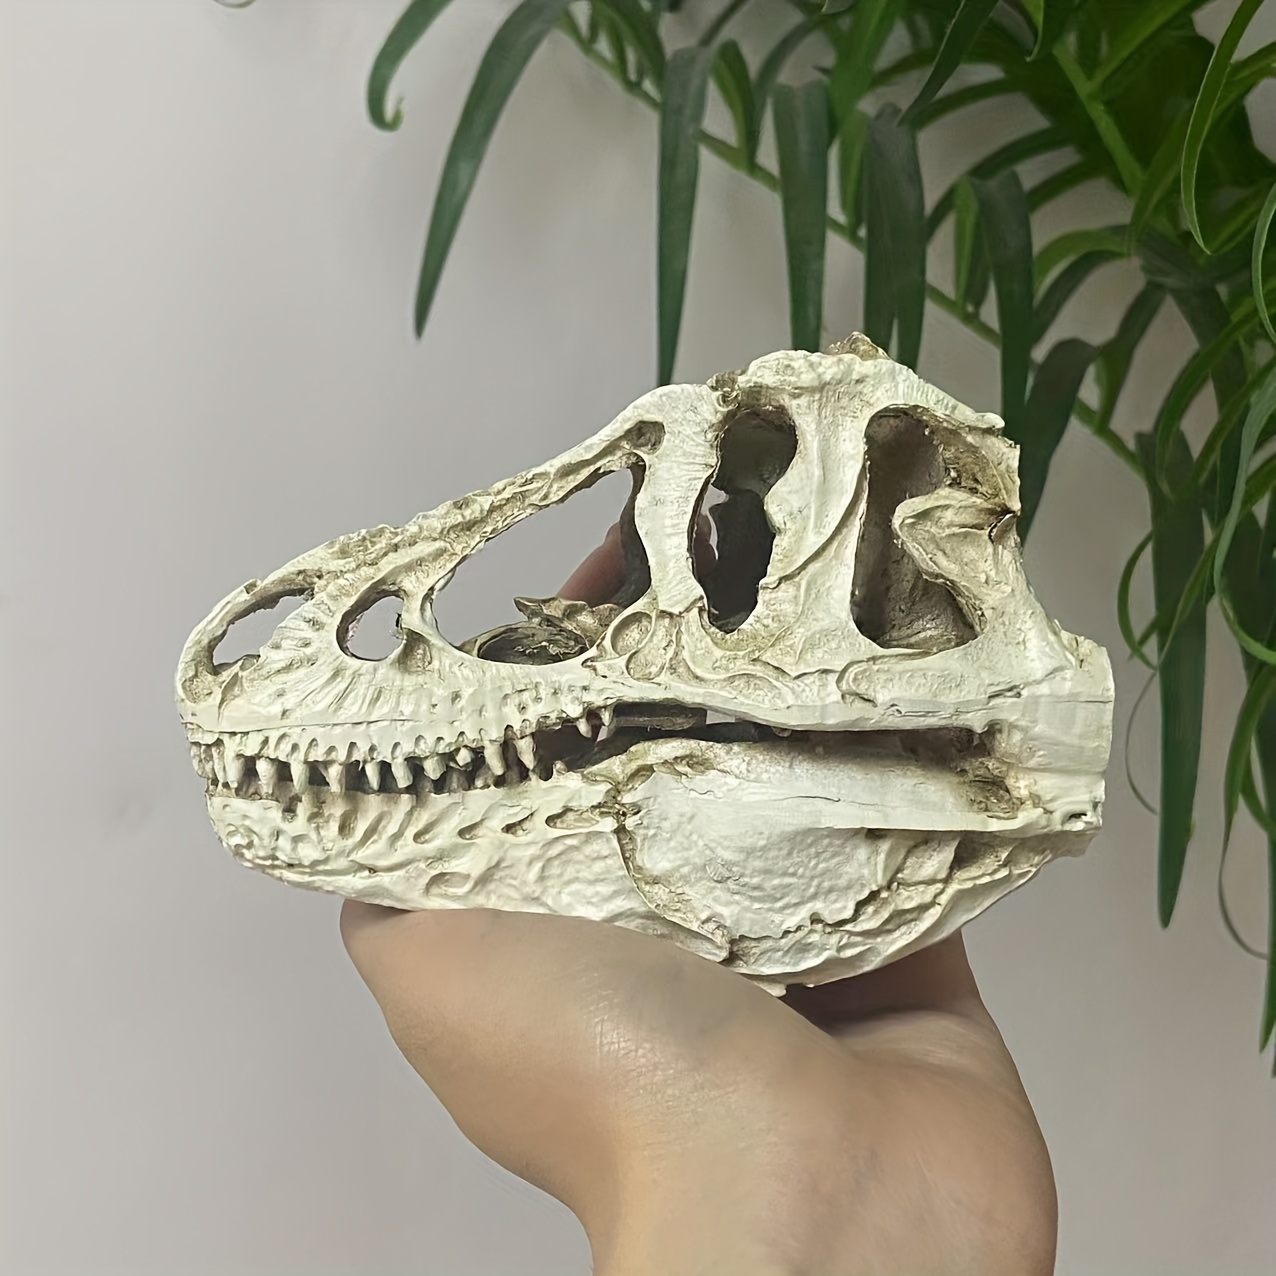 Escultura Decorativa de Resina Esqueleto T-Rex